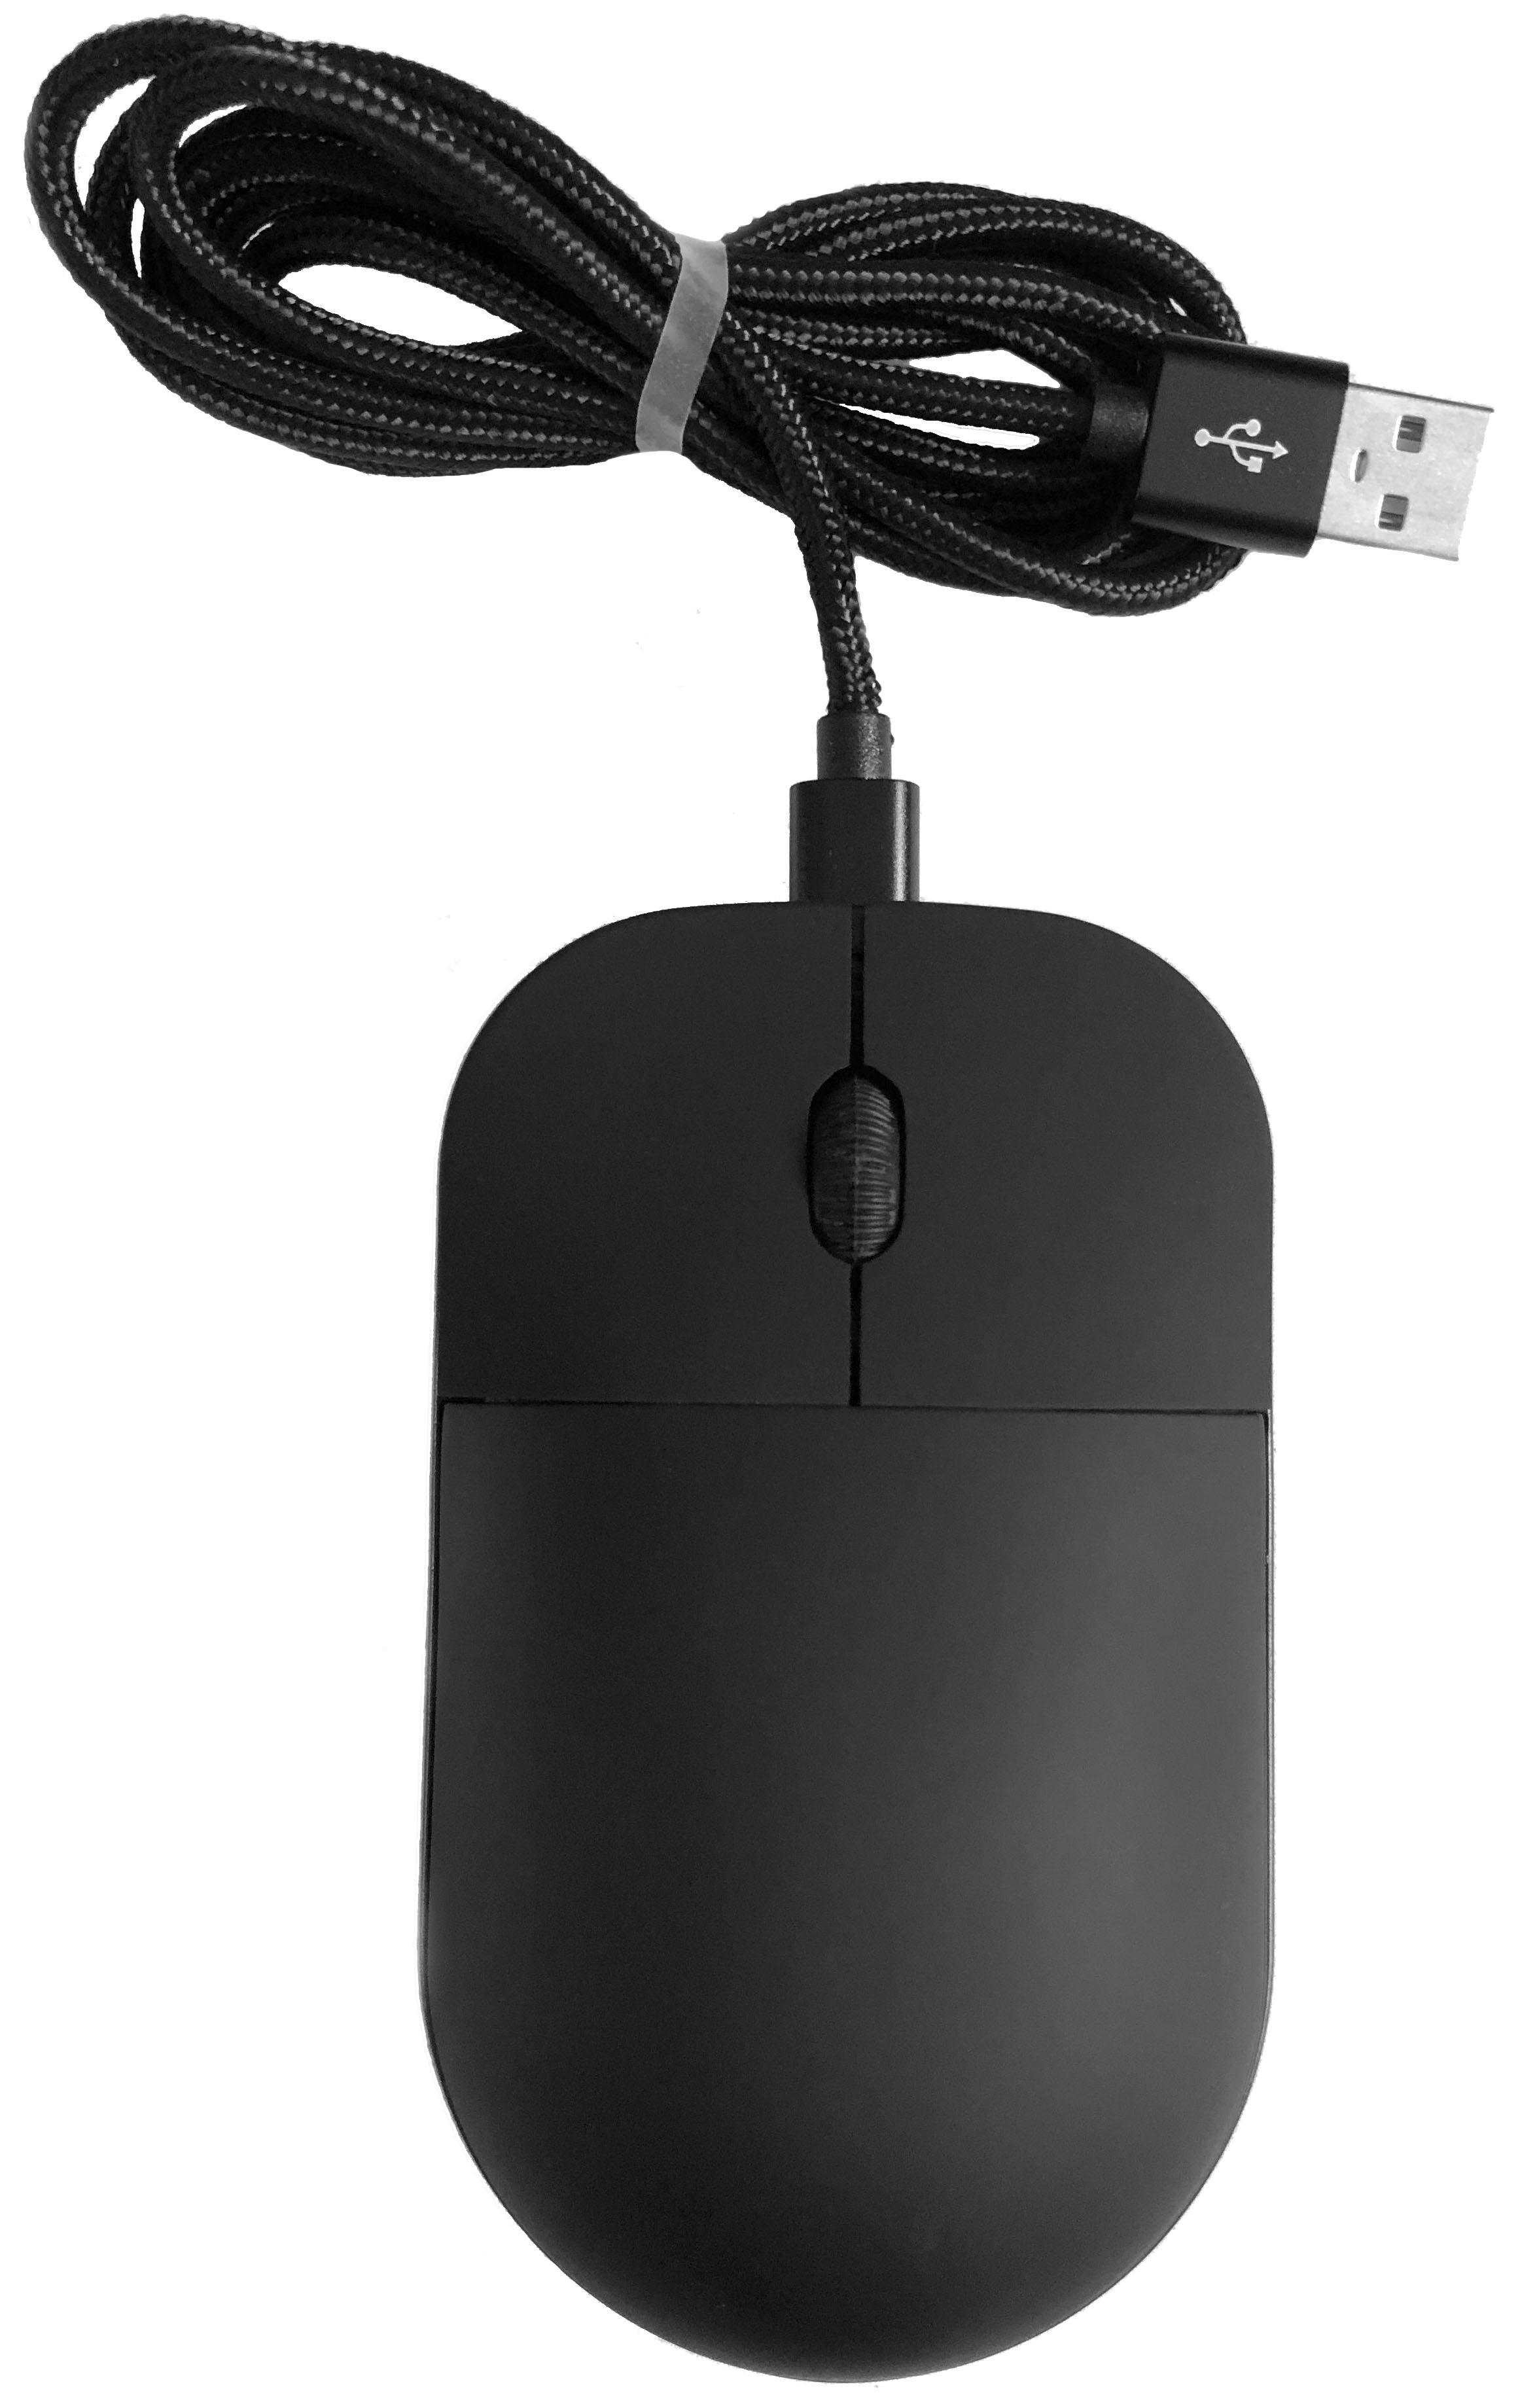 ValueRays USB Optical Heated Mouse Intelligent